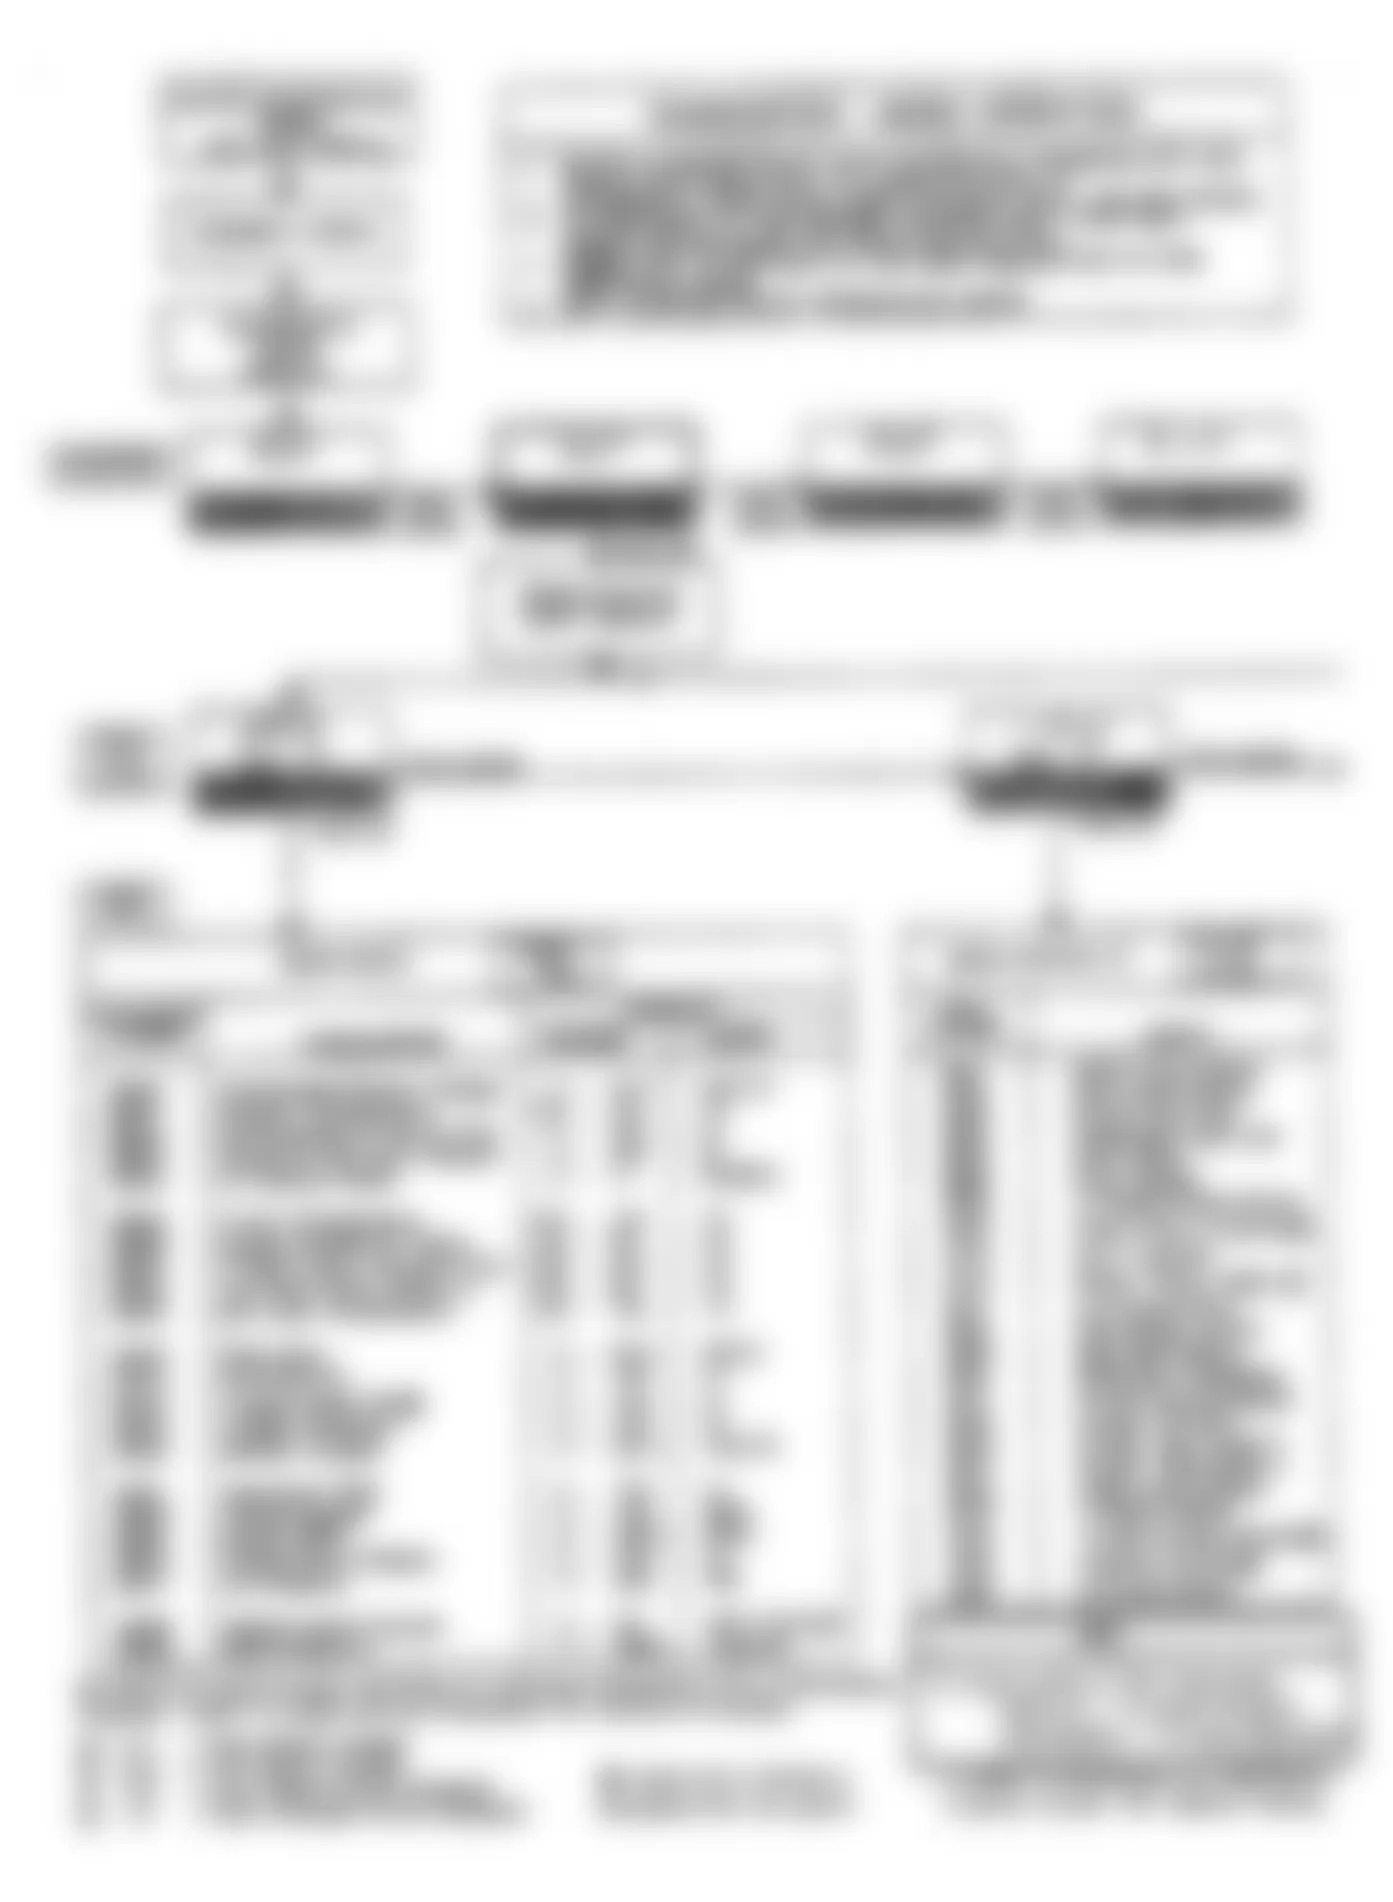 Buick Reatta 1990 - Component Locations -  Diagnostic ECM Flow Chart (3 of 6)